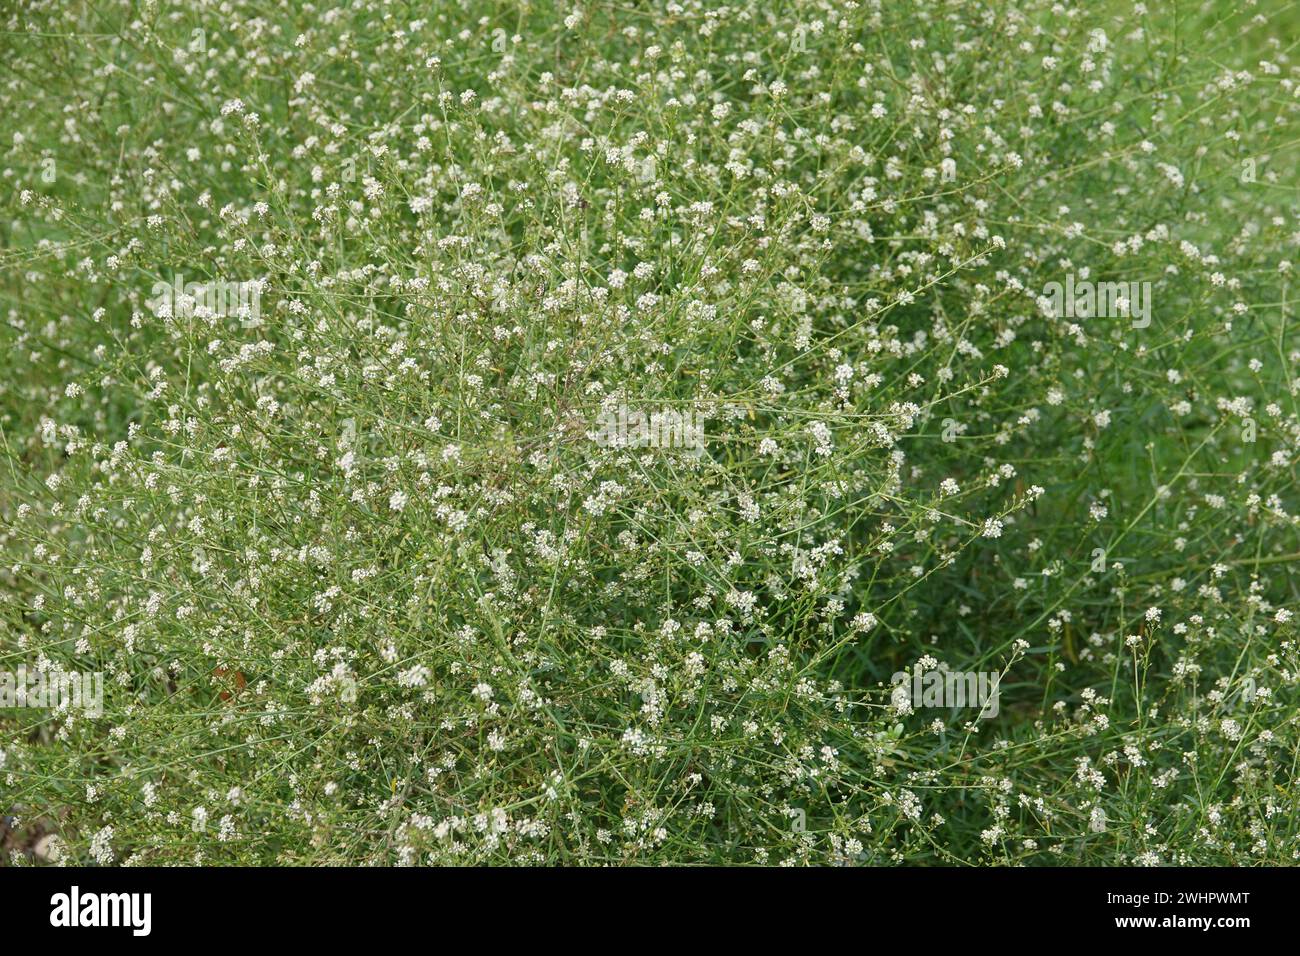 Lepidium graminifolium, grassleaf pepperweed Stock Photo